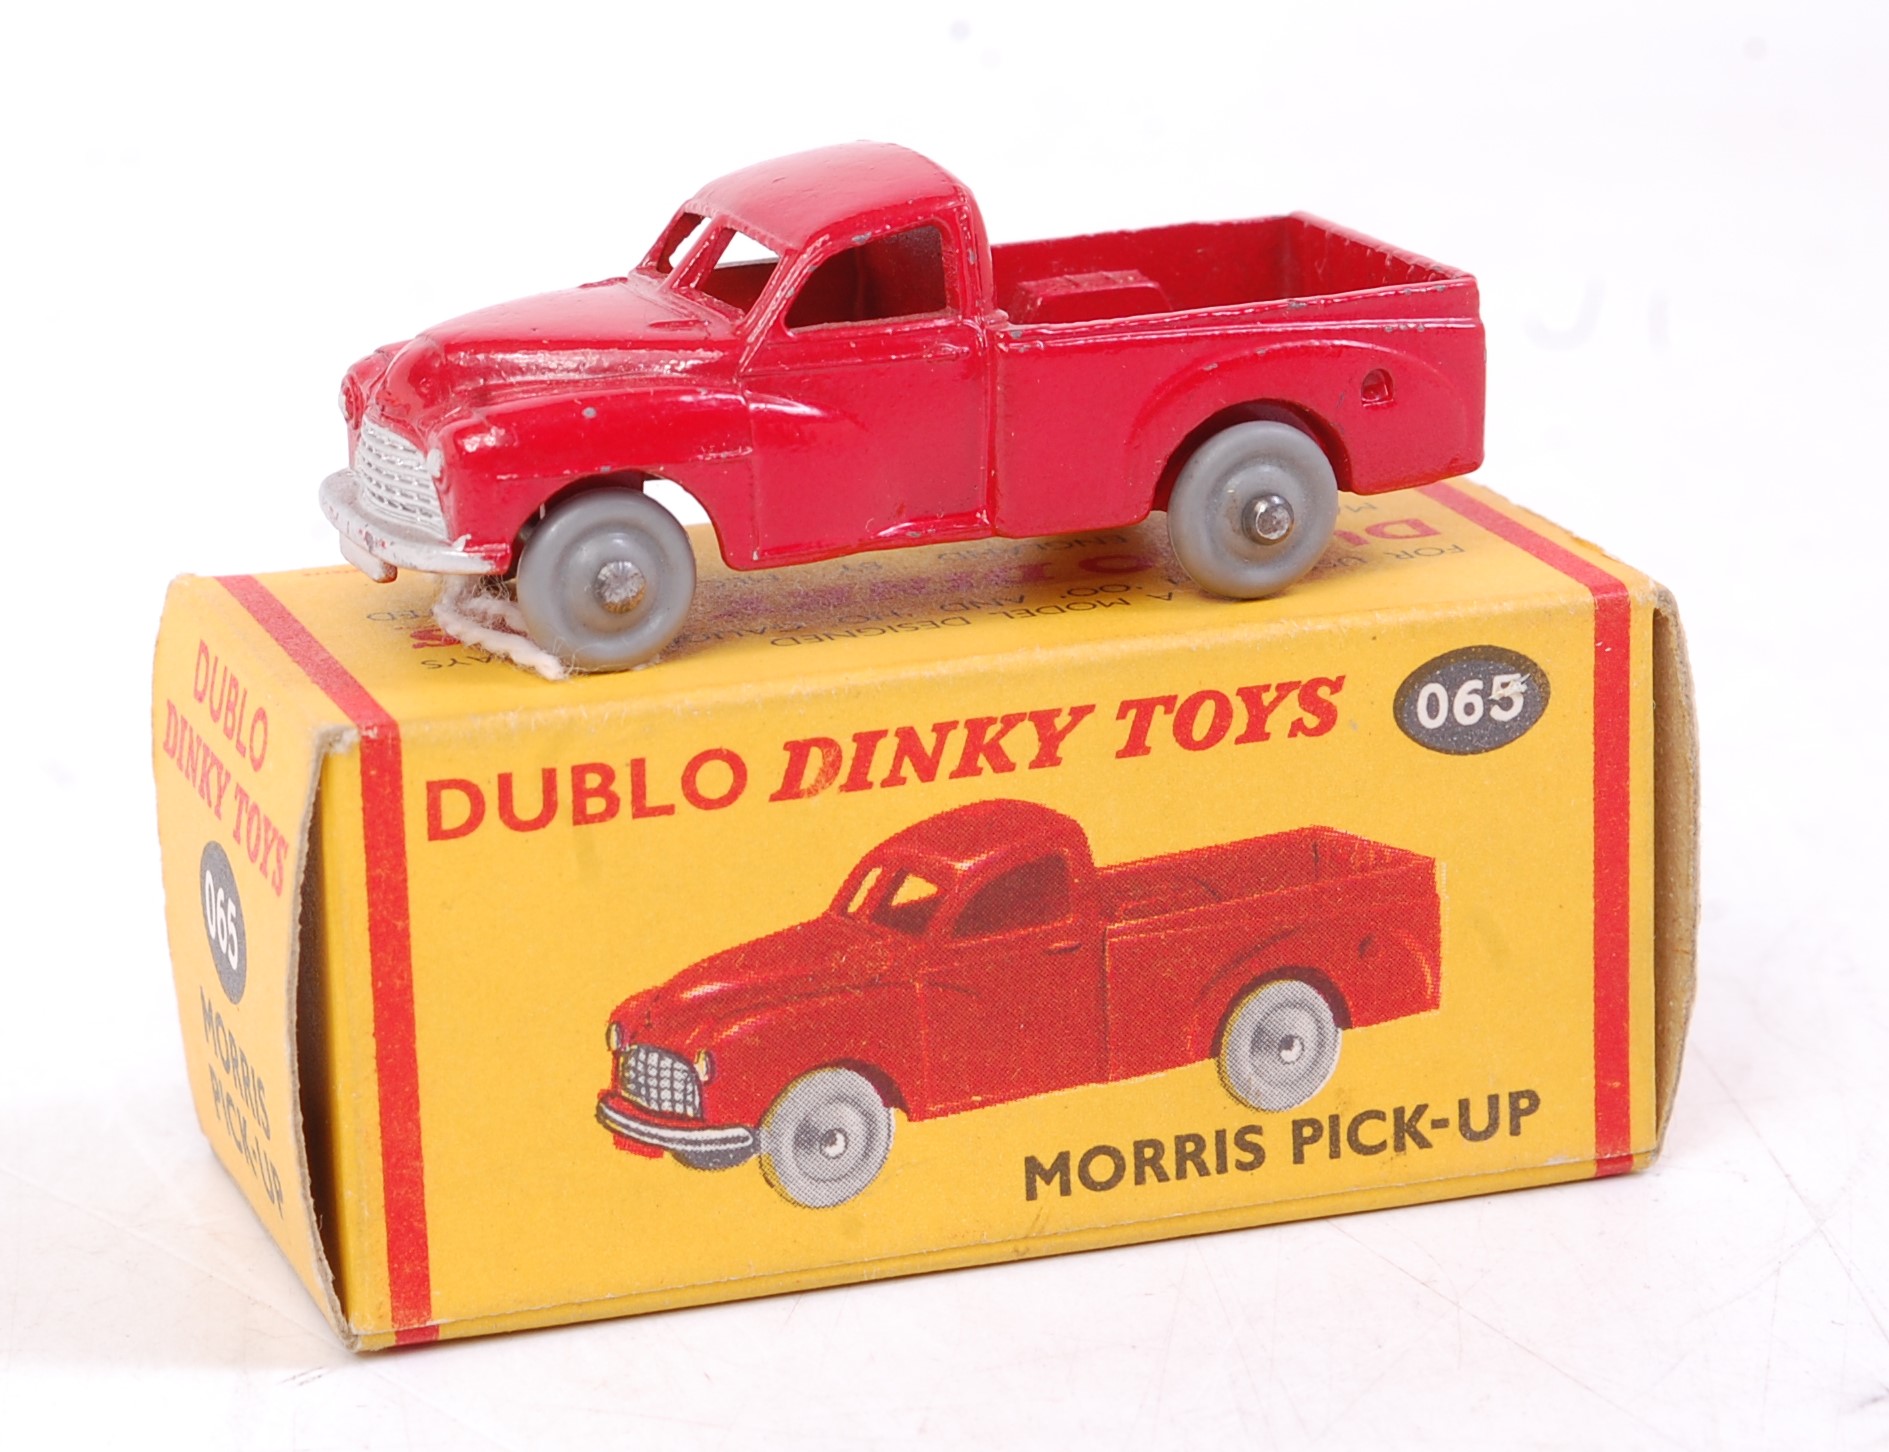 A Dublo Dinky Toys No.